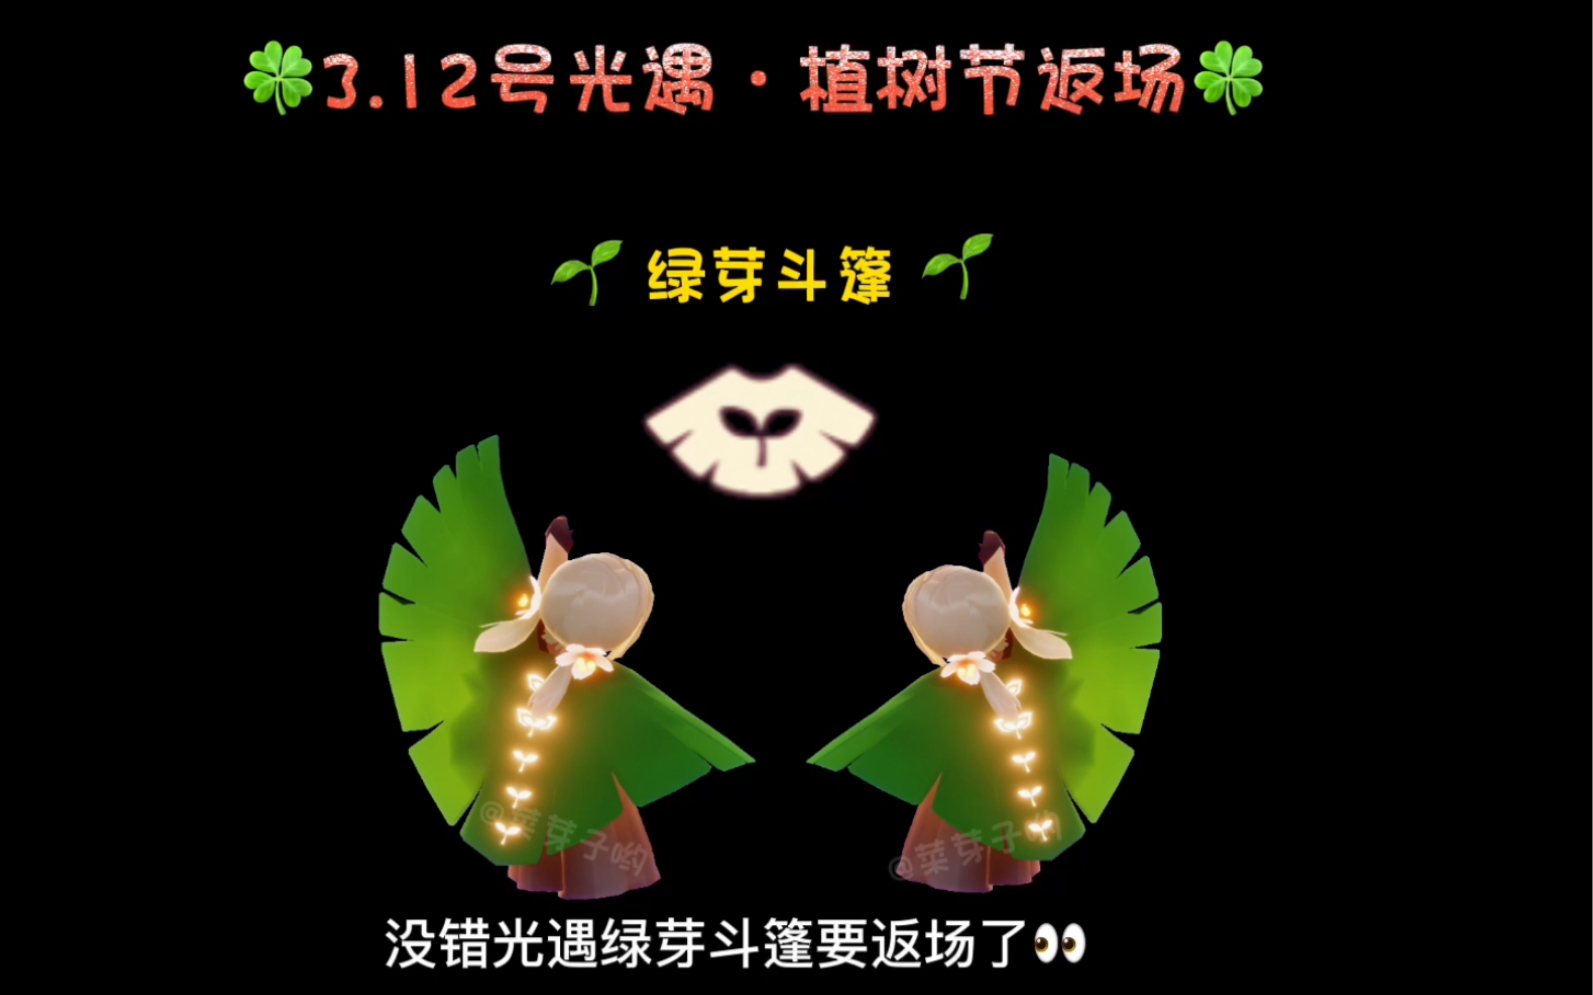 【光遇】3月12号植树节返场绿芽斗篷喔!